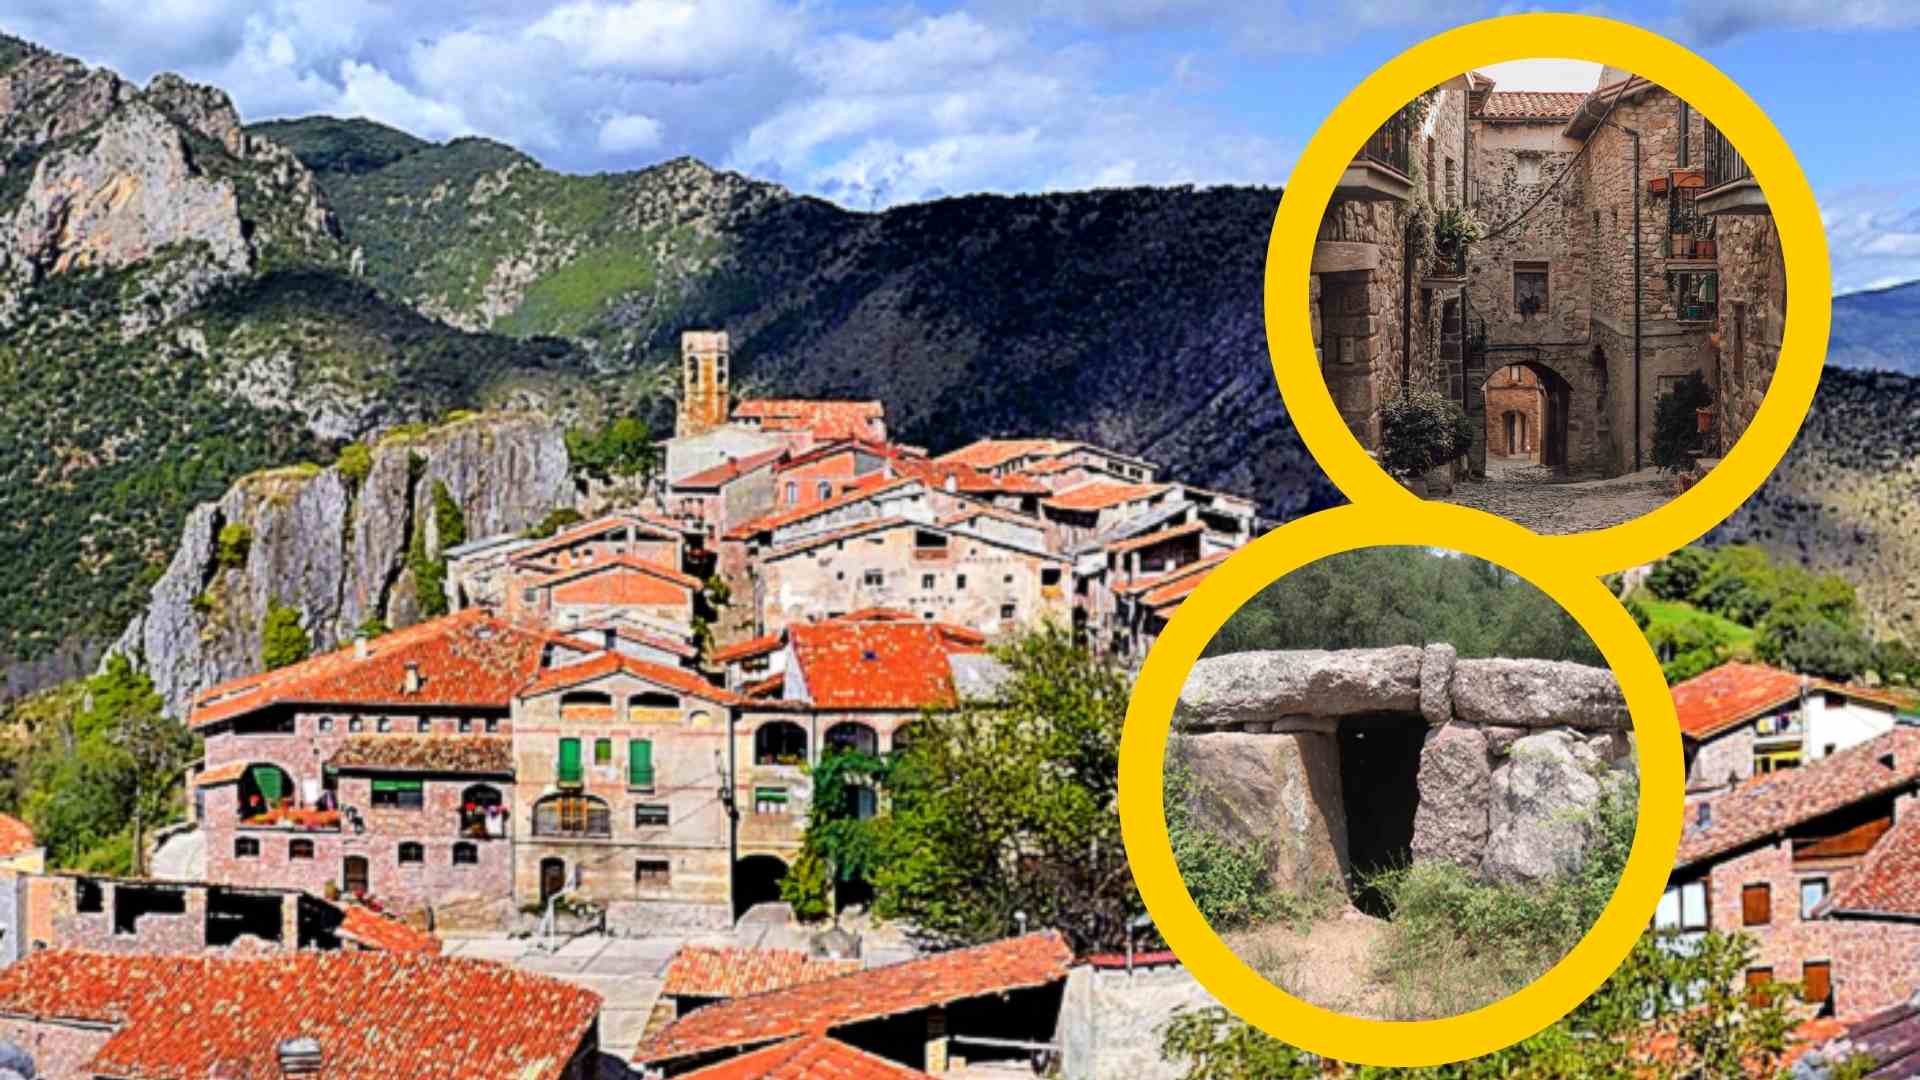 El hermoso pueblo catalán rodeado por montañas que tenía un castillo medieval